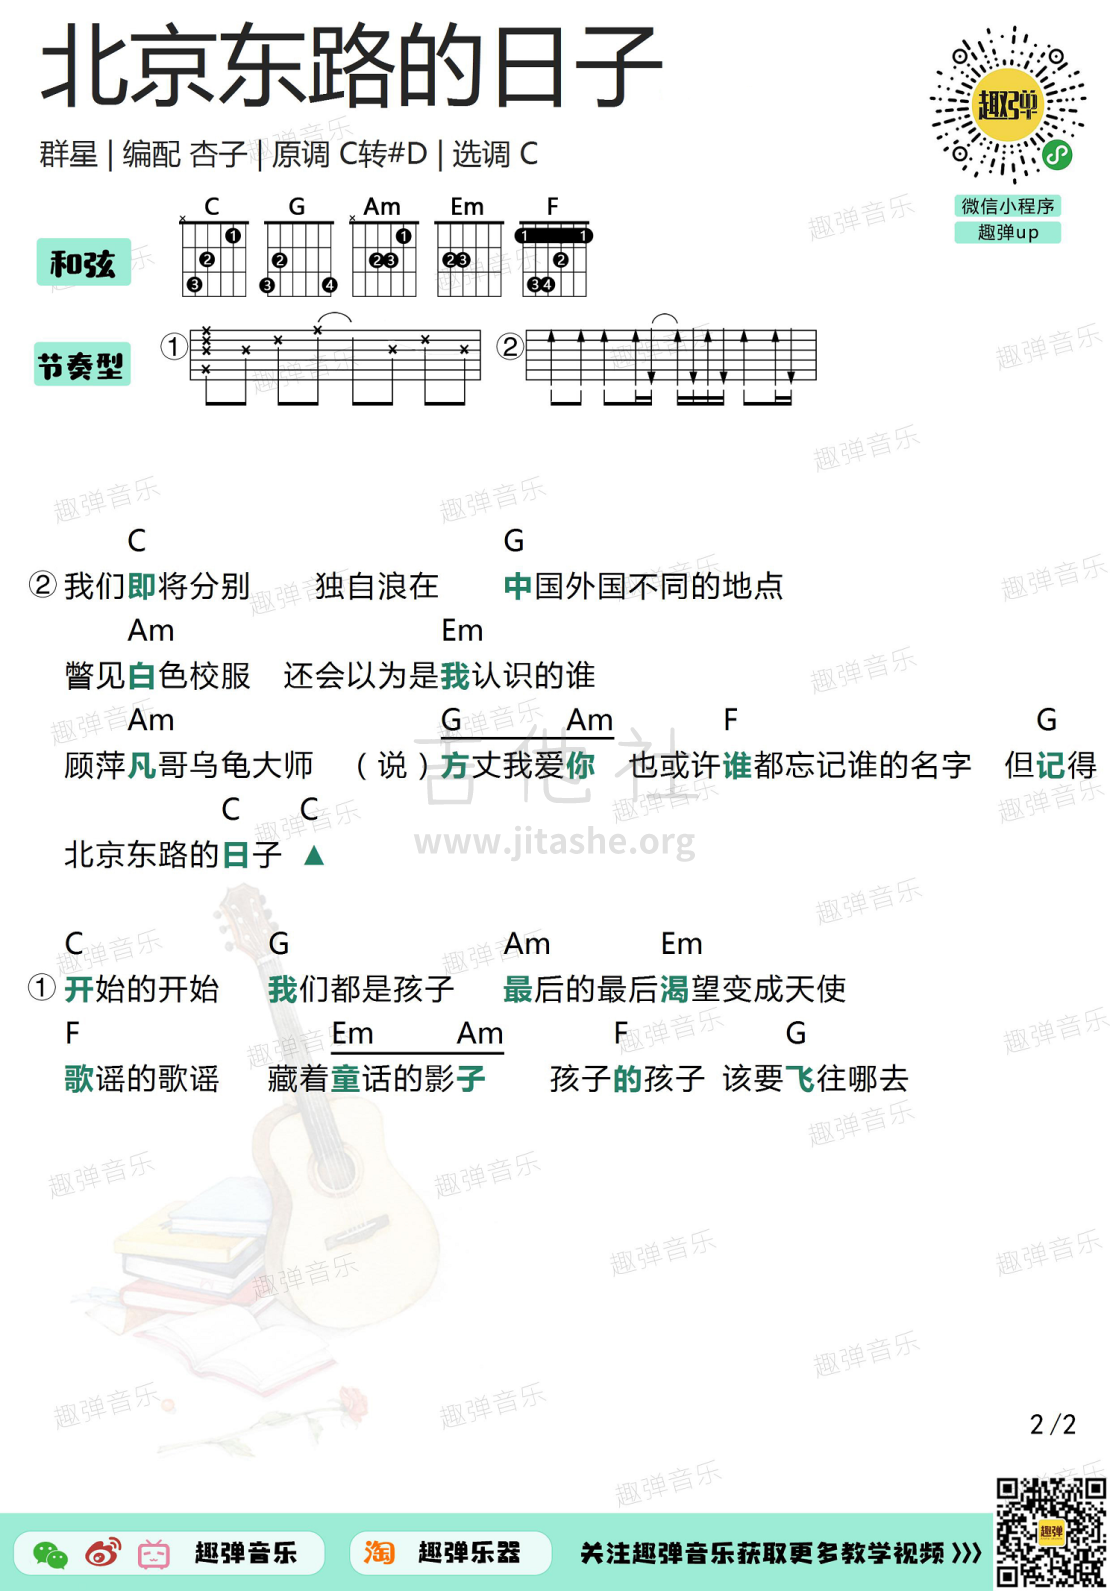 【毕业季】北京东路的日子 Clozzz吉他指弹谱_哔哩哔哩_bilibili